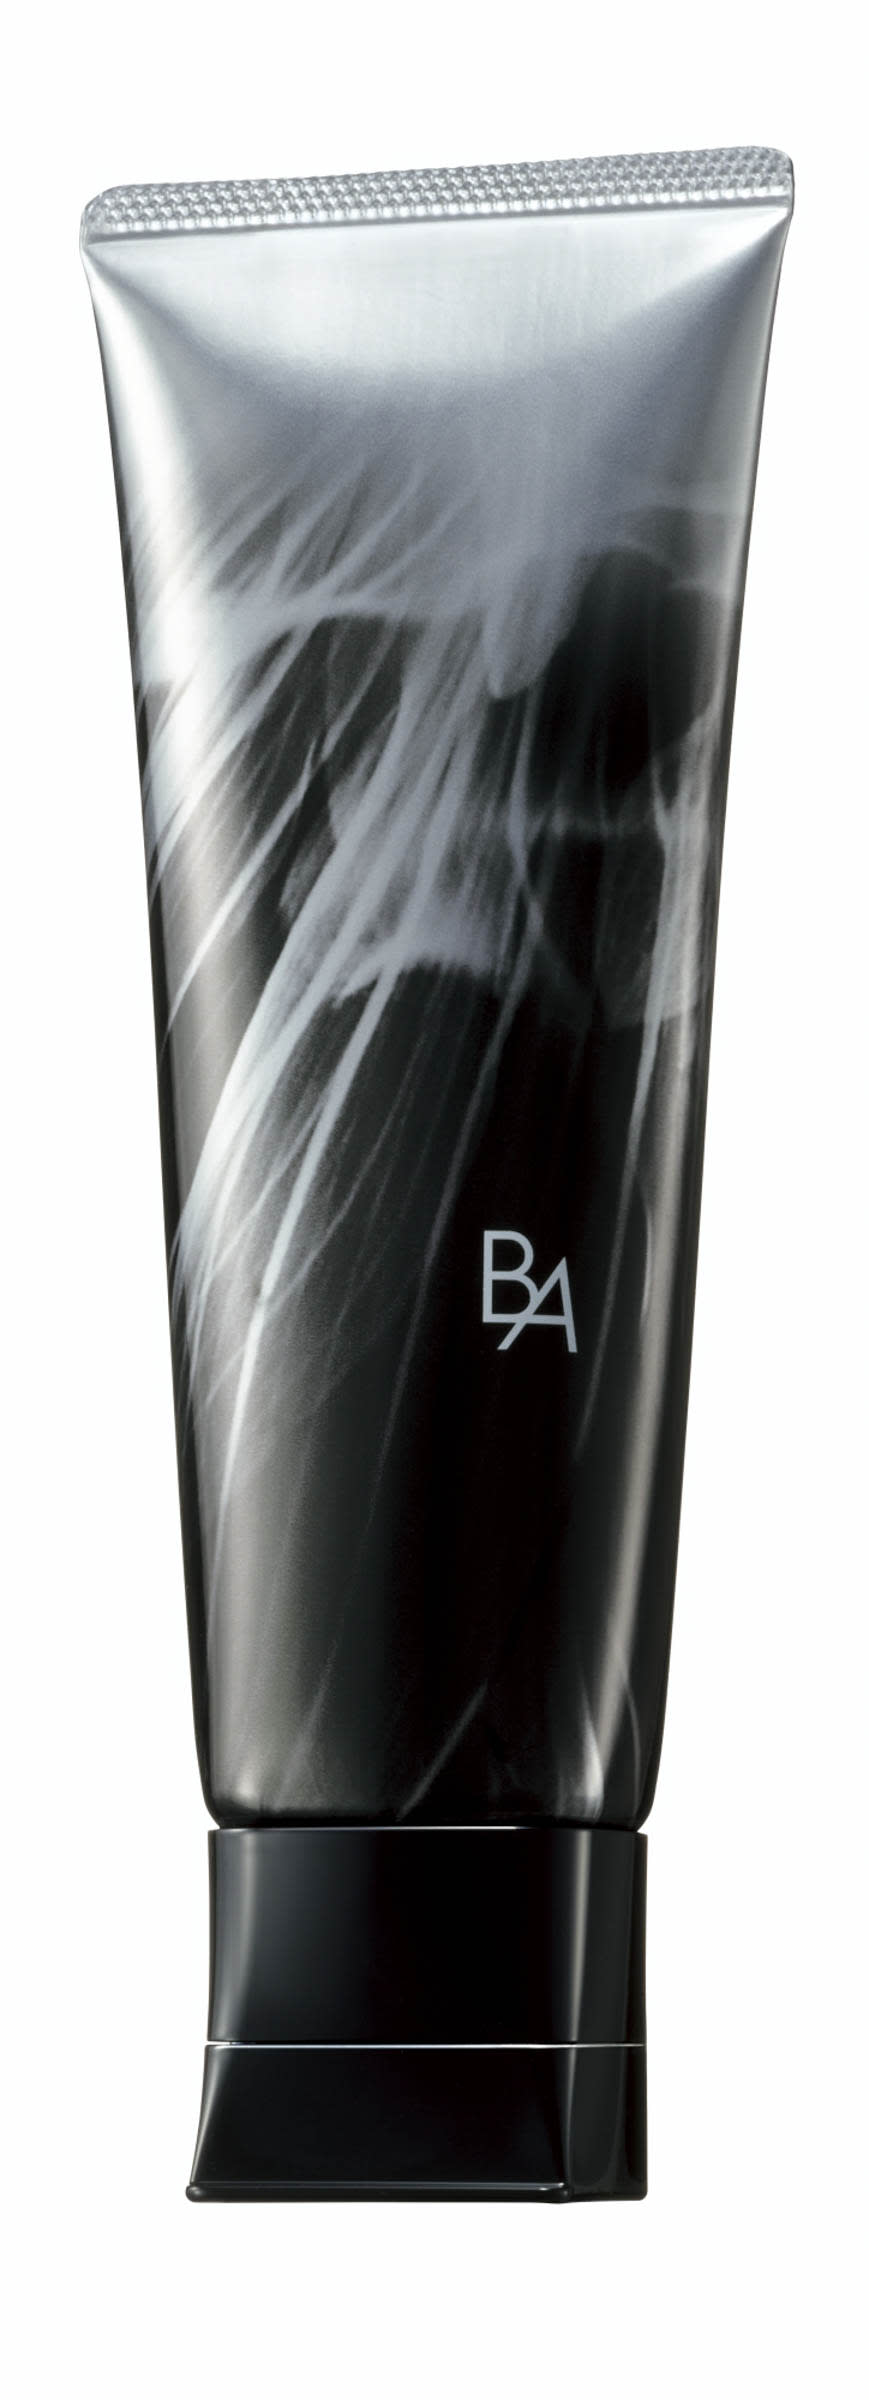 ポーラ最高峰ブランド「B.A」が洗顔マスク発売、洗顔と保湿効果の両立で肌の糖化をケア